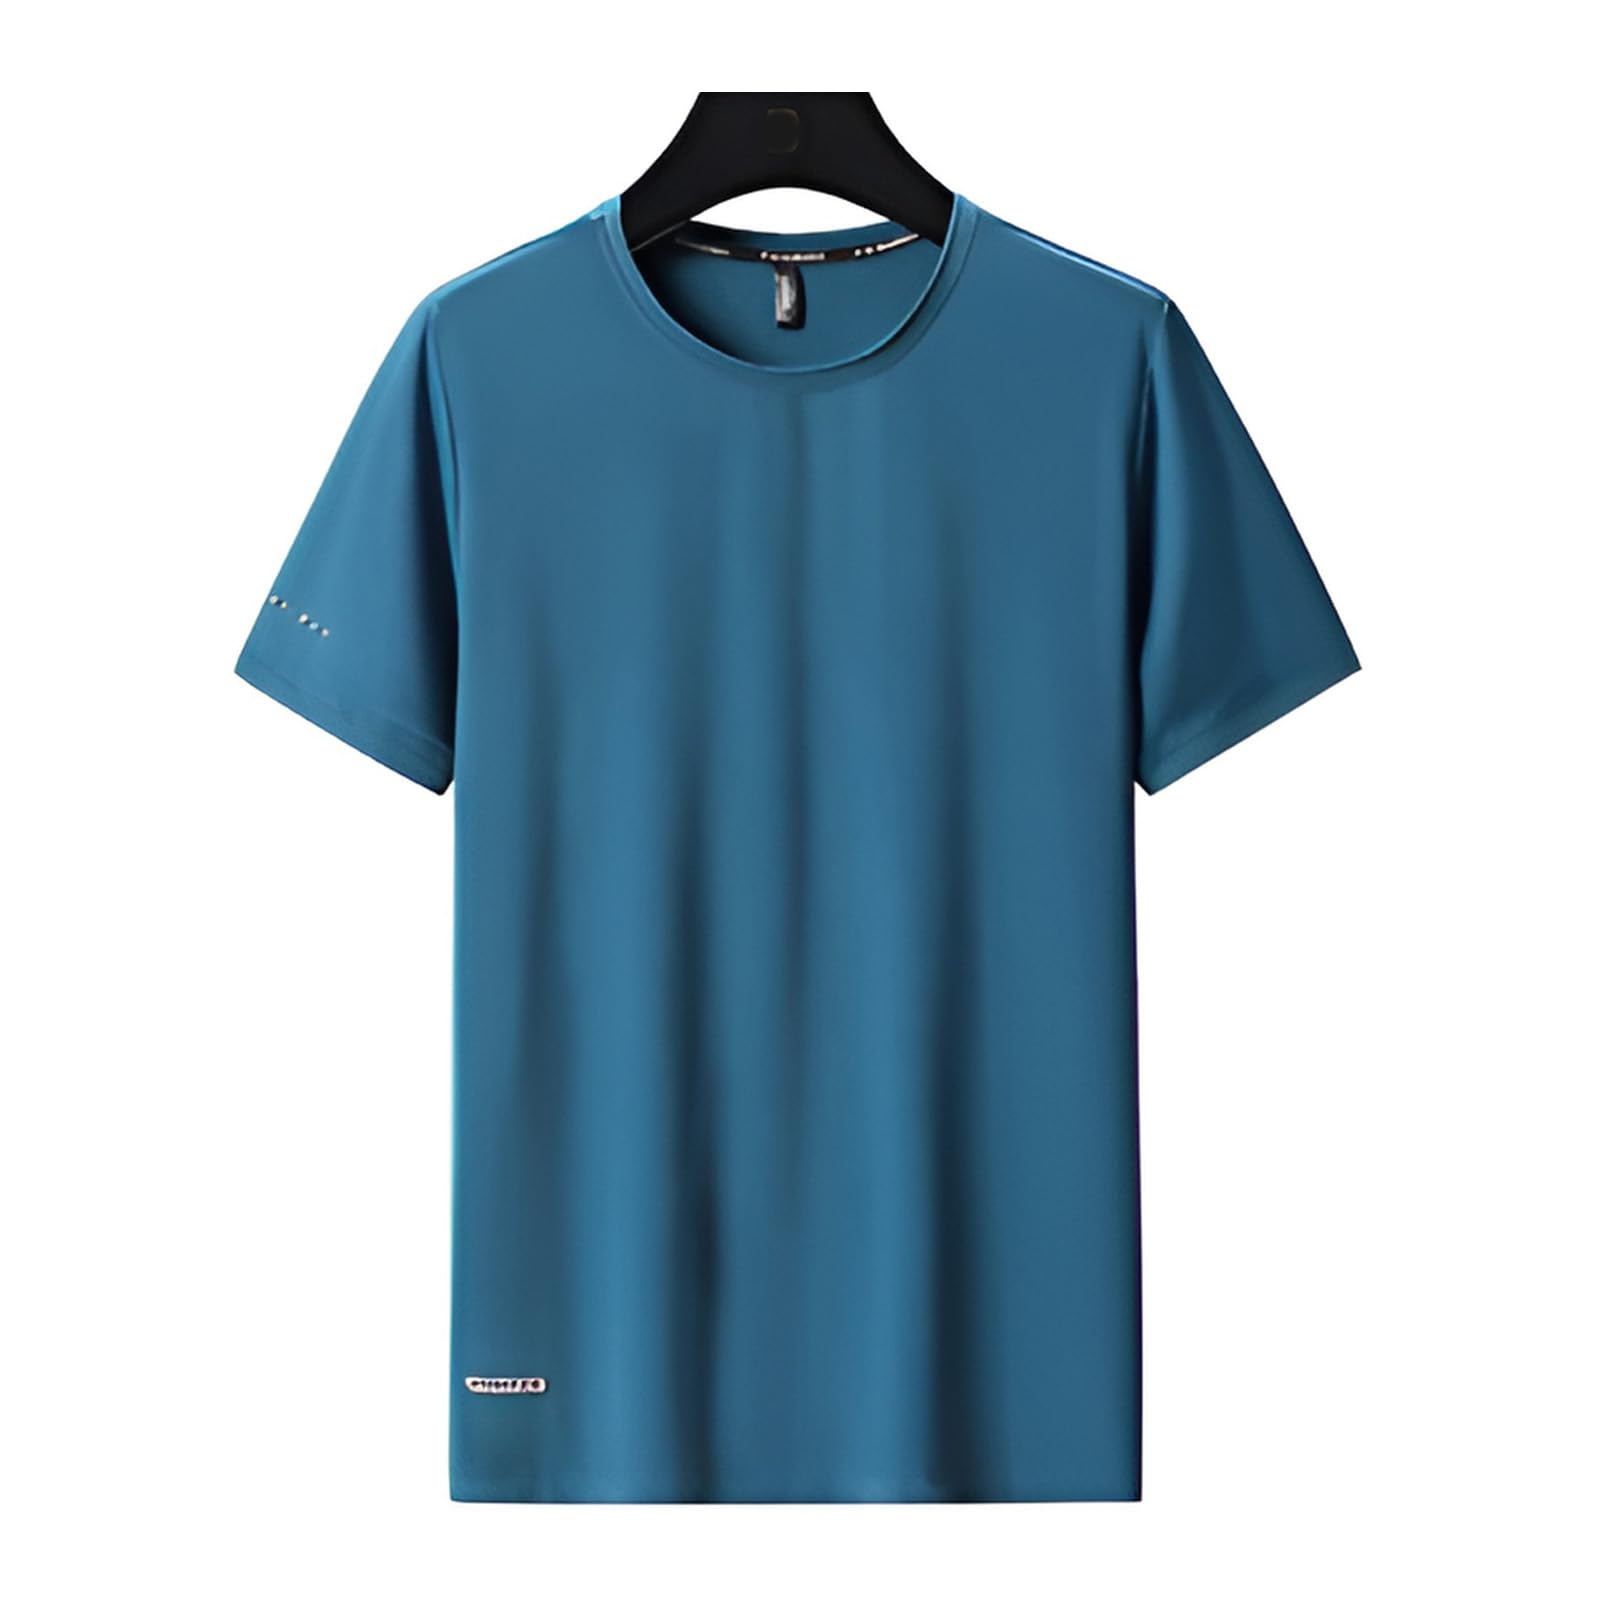 VUIOYRG Rundhals-T-Shirt aus Eisseide, Sommer-T-Shirt aus Eisseidenstoff, schnell trocknende, kurzärmlige Sport-Fitness-T-Shirts (Blauer See,6XL)